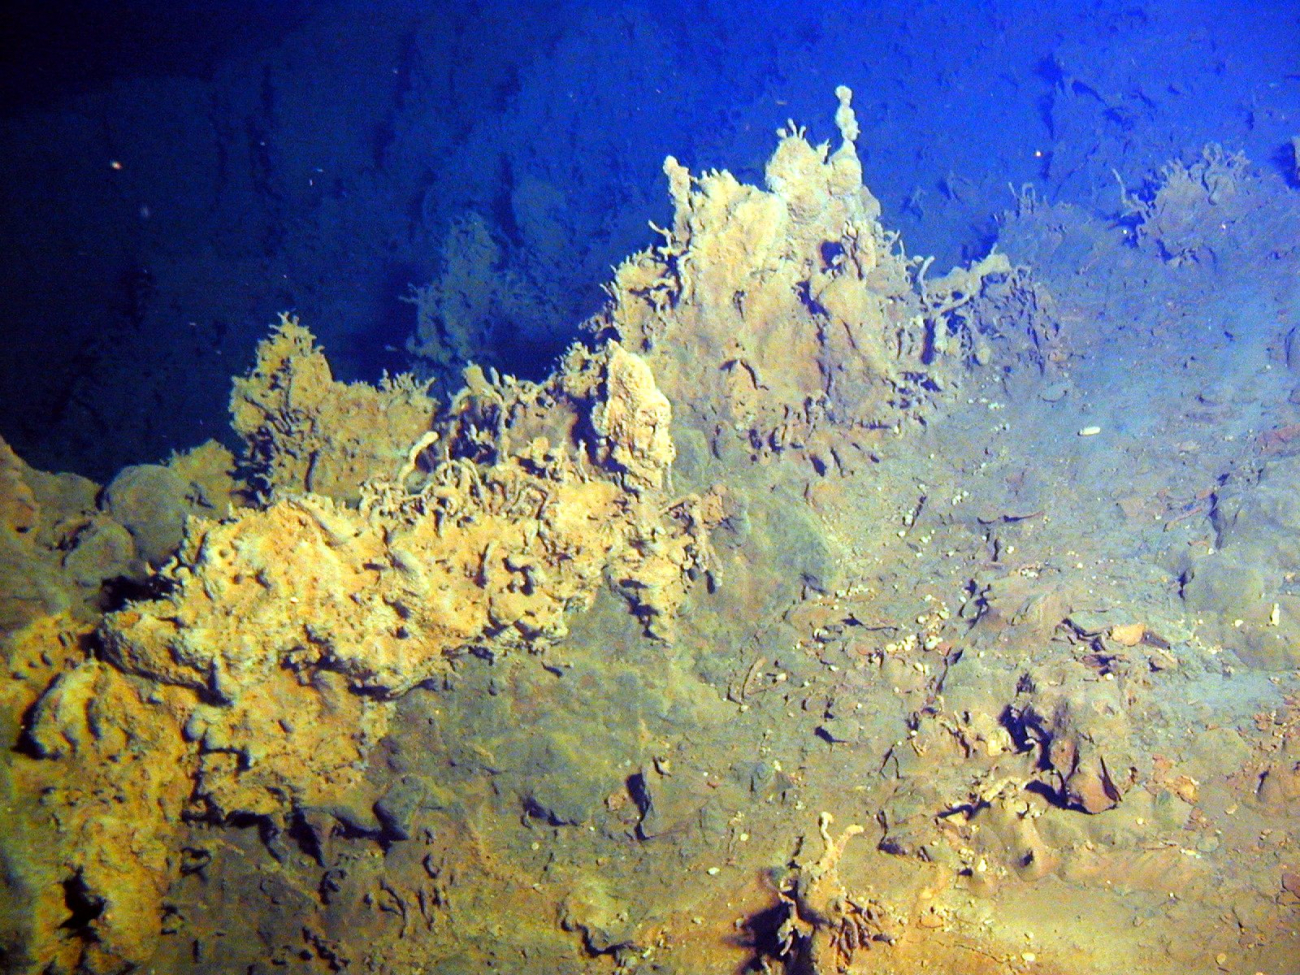 Iron precipitates grow in bizarre tubular twists at Healy submarine volcano